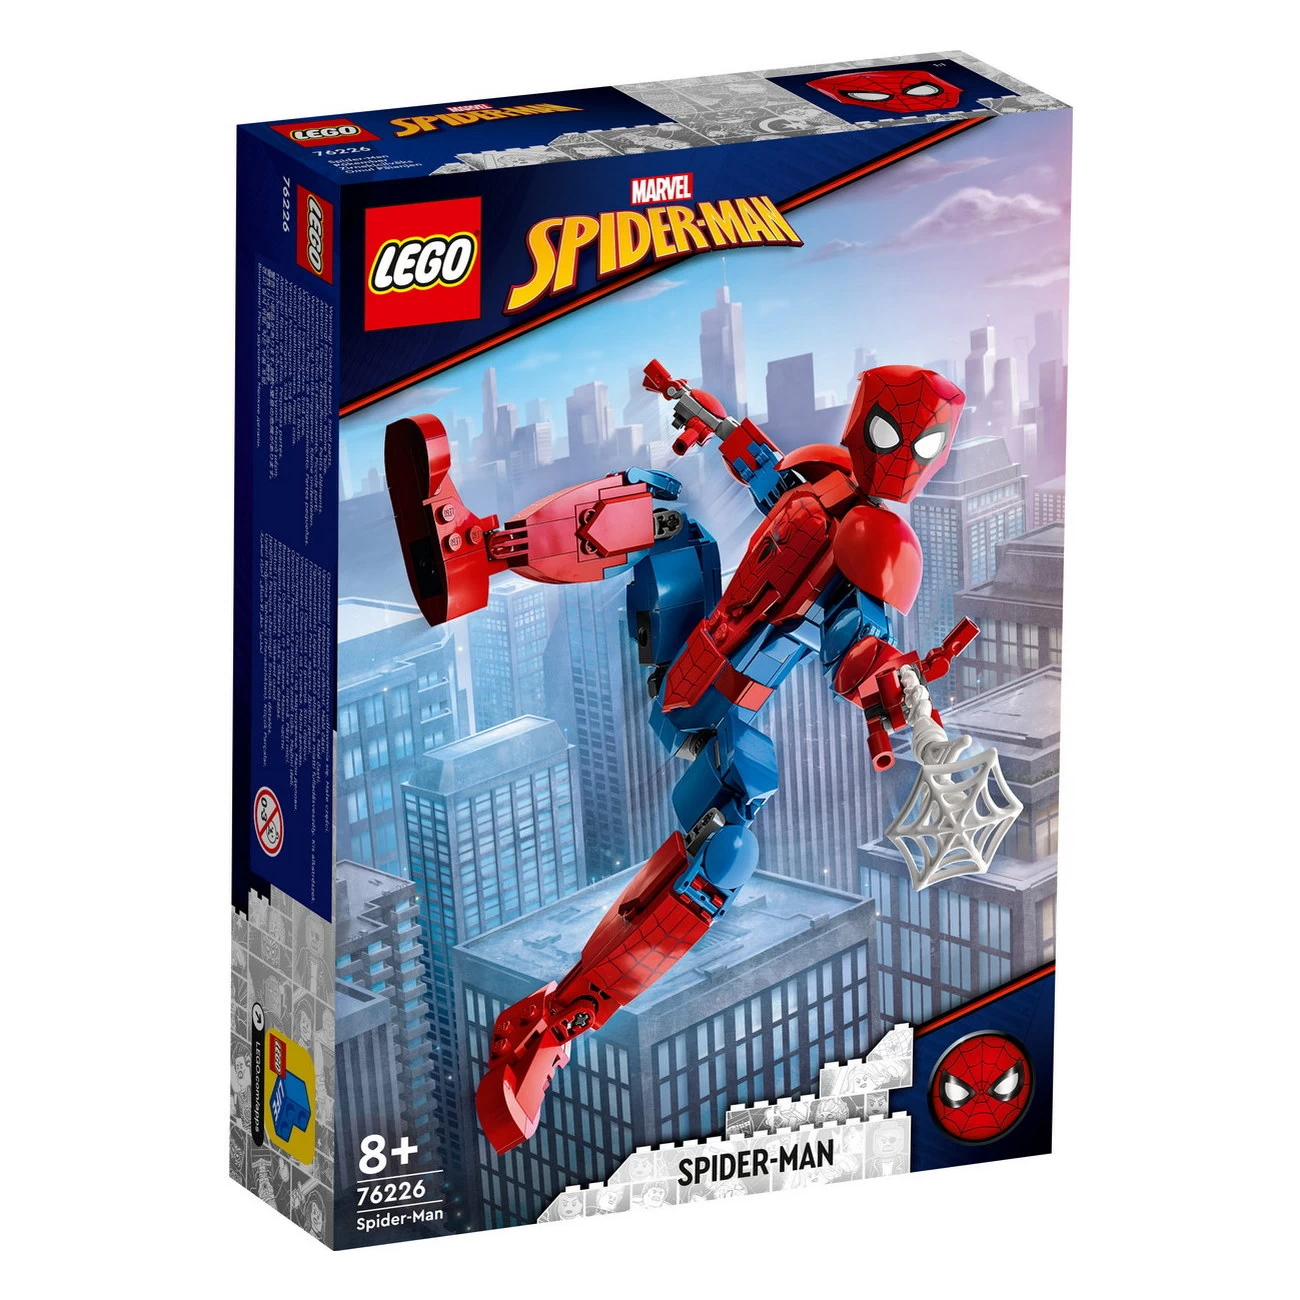 Spider-Man Figur (76226)